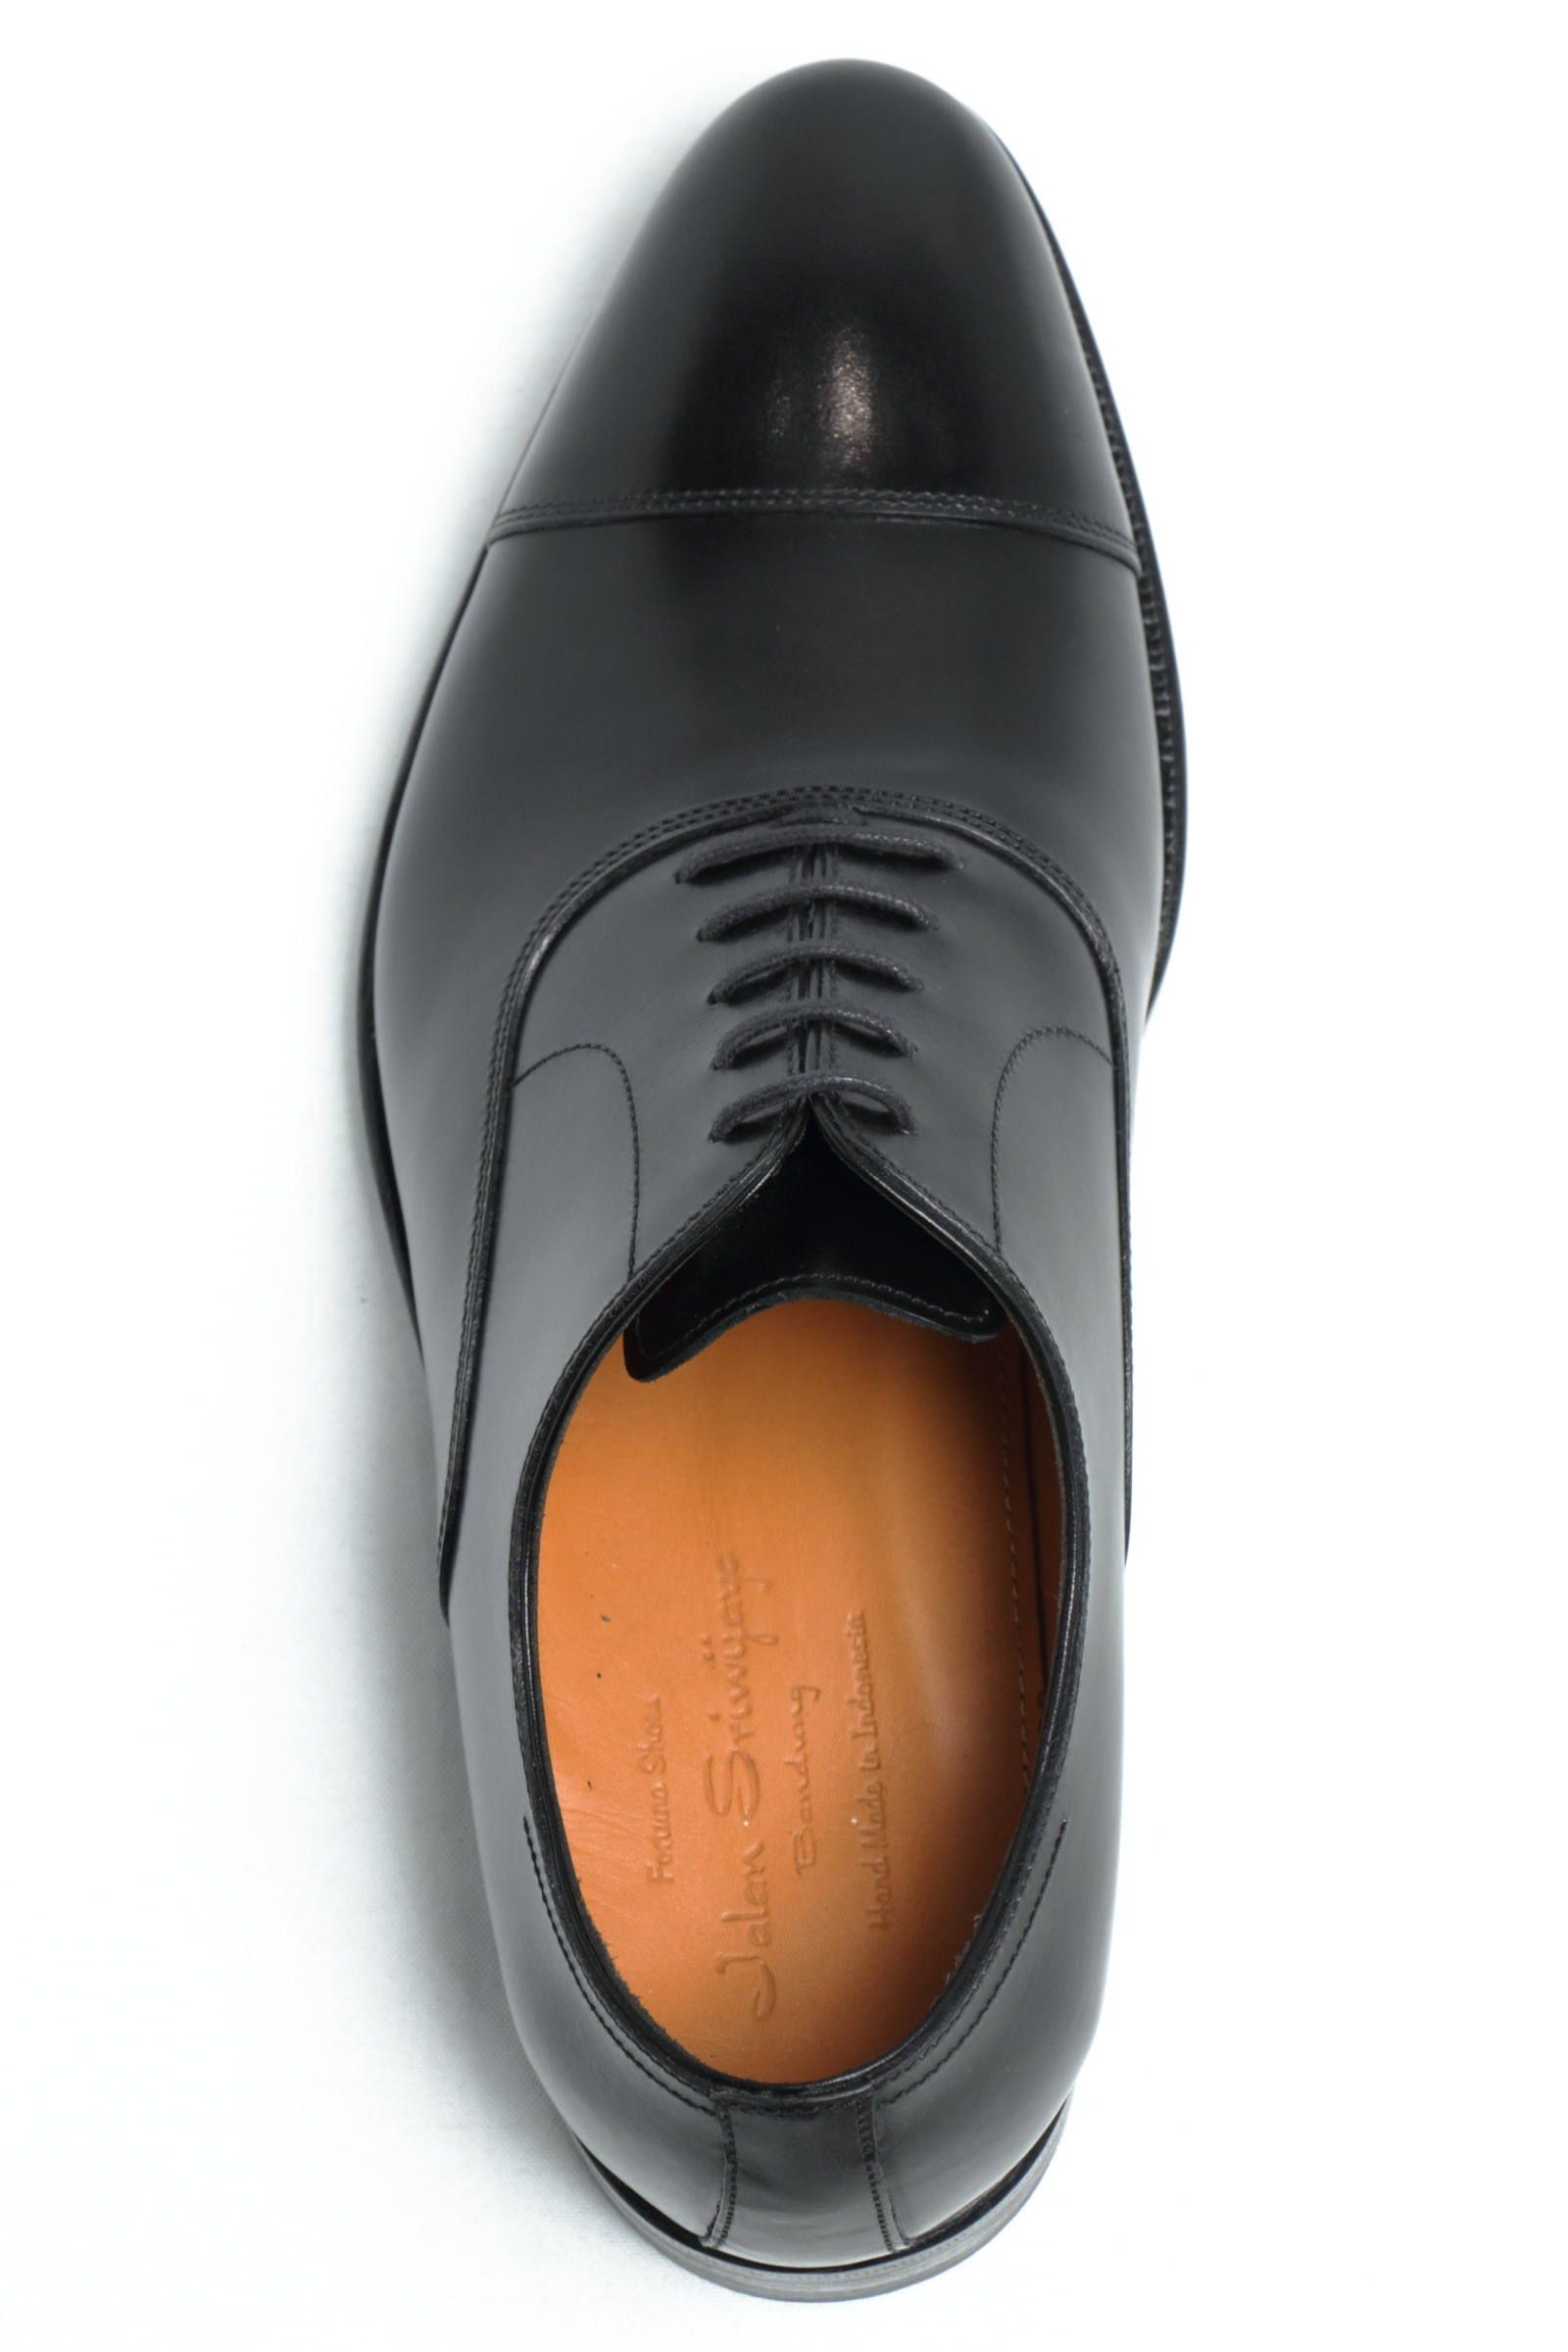 BUNDING 98321 ダイナイトソール デュプイカーフ ストレートチップ シューズ 革靴 / ブラック - UK6/24.5~25.0